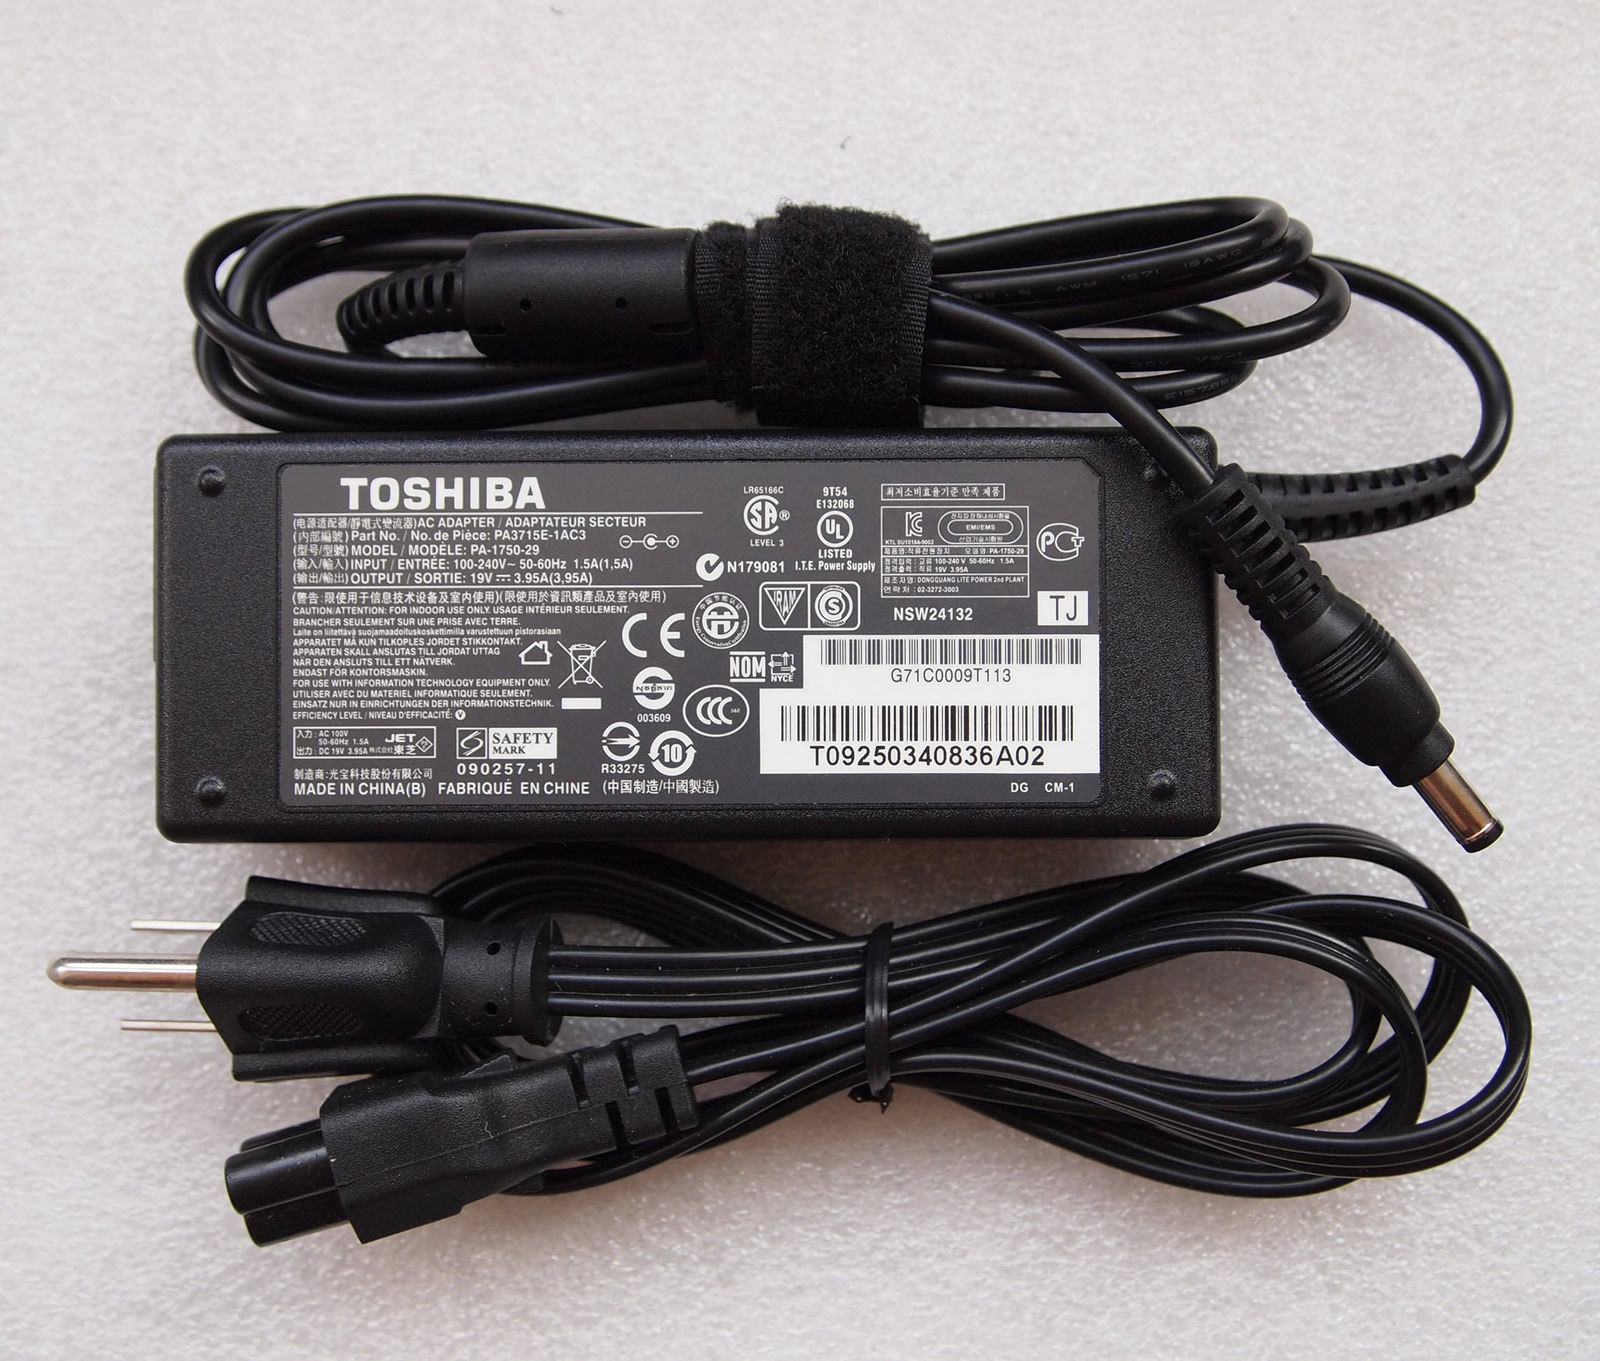 Thay Sạc laptop TOSHIBA chính hãng giá tốt nhất TPHCM